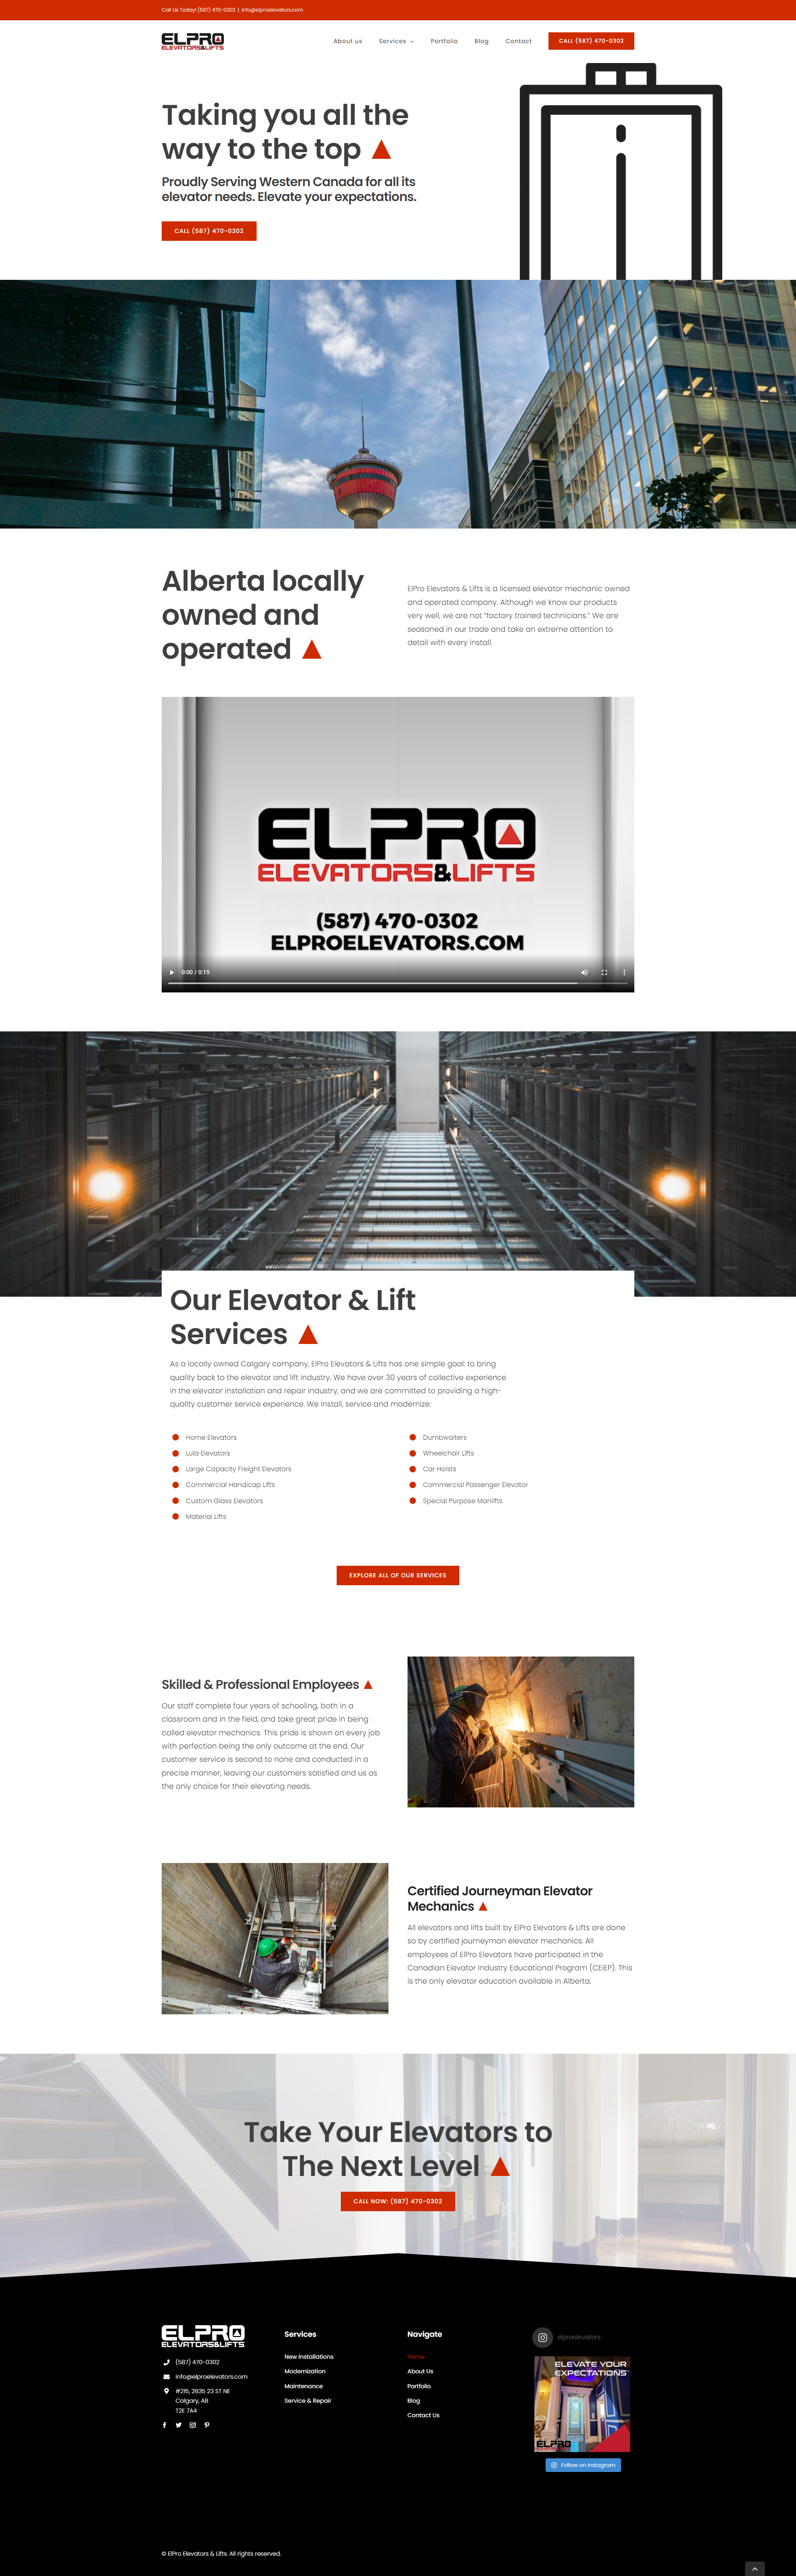 Website Design for ElPro Elevators